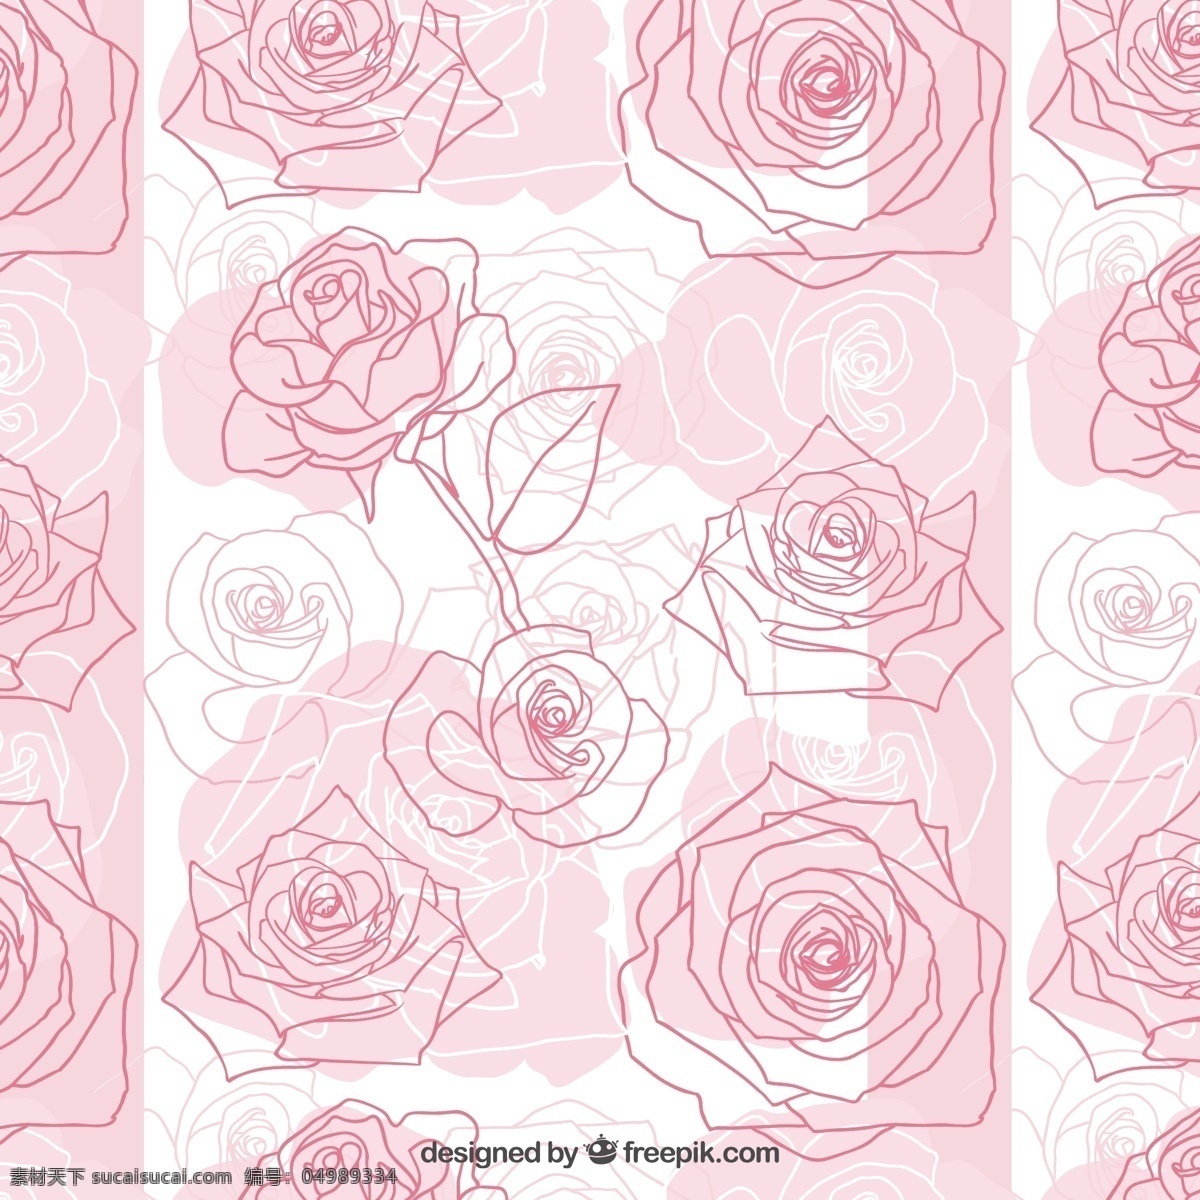 手绘玫瑰图案 花 玫瑰图案 手工绘制 玫瑰 花卉图案 绘画 无缝模式 无缝的 粗略的 白色